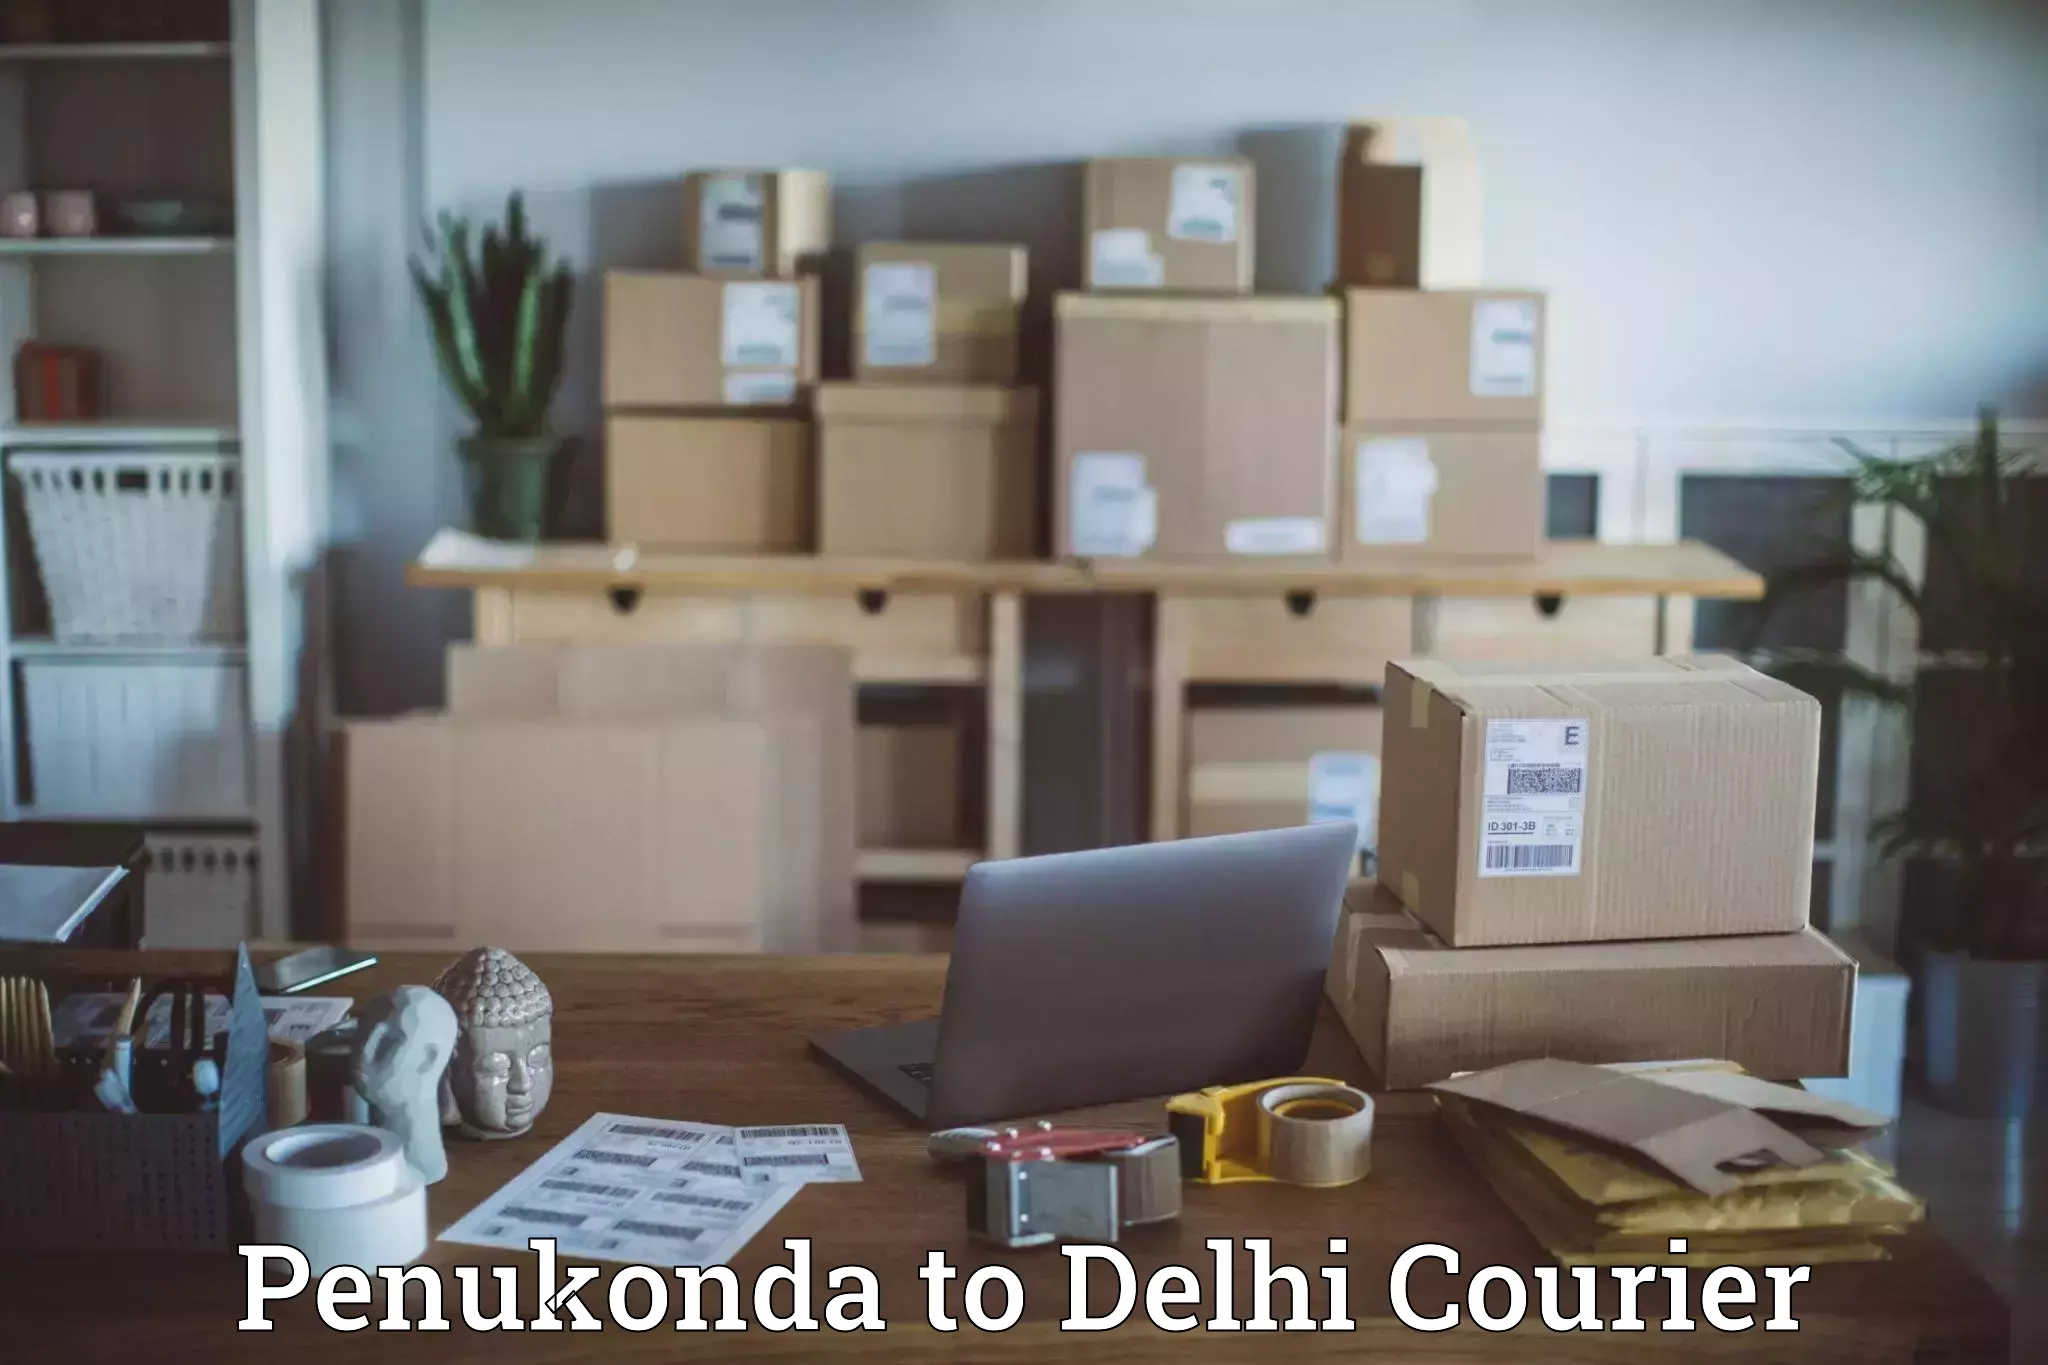 International courier networks Penukonda to Delhi